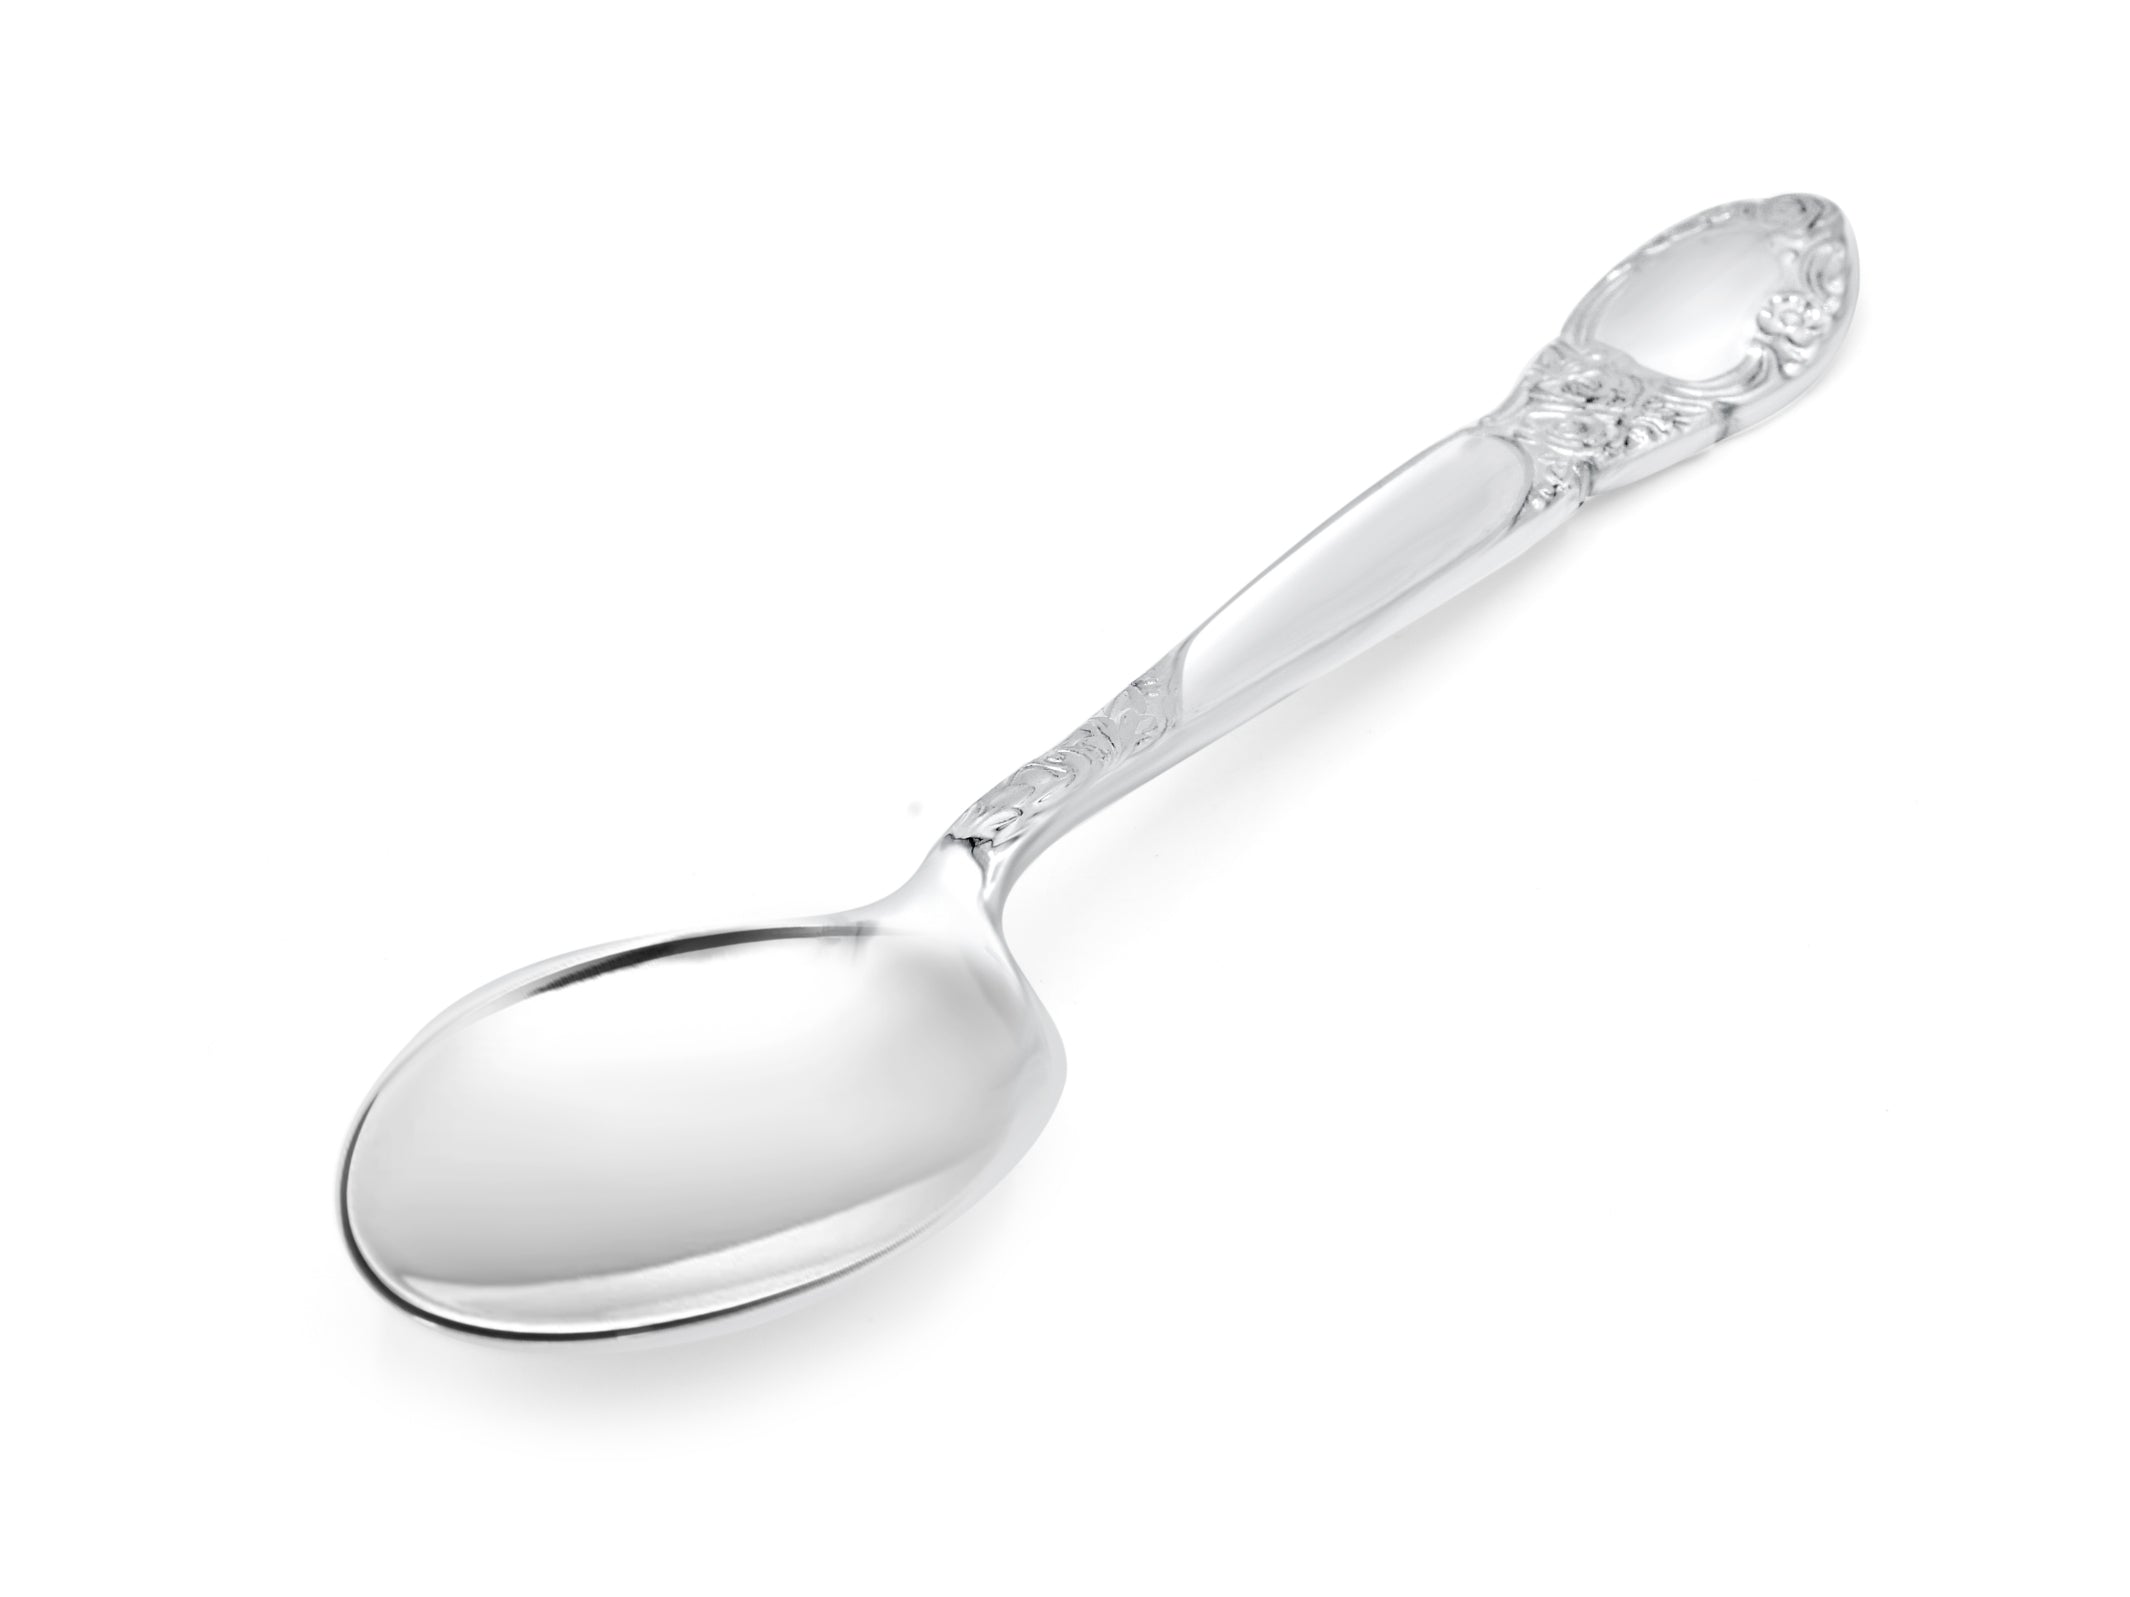 Silver Spoon - Roop Darshan